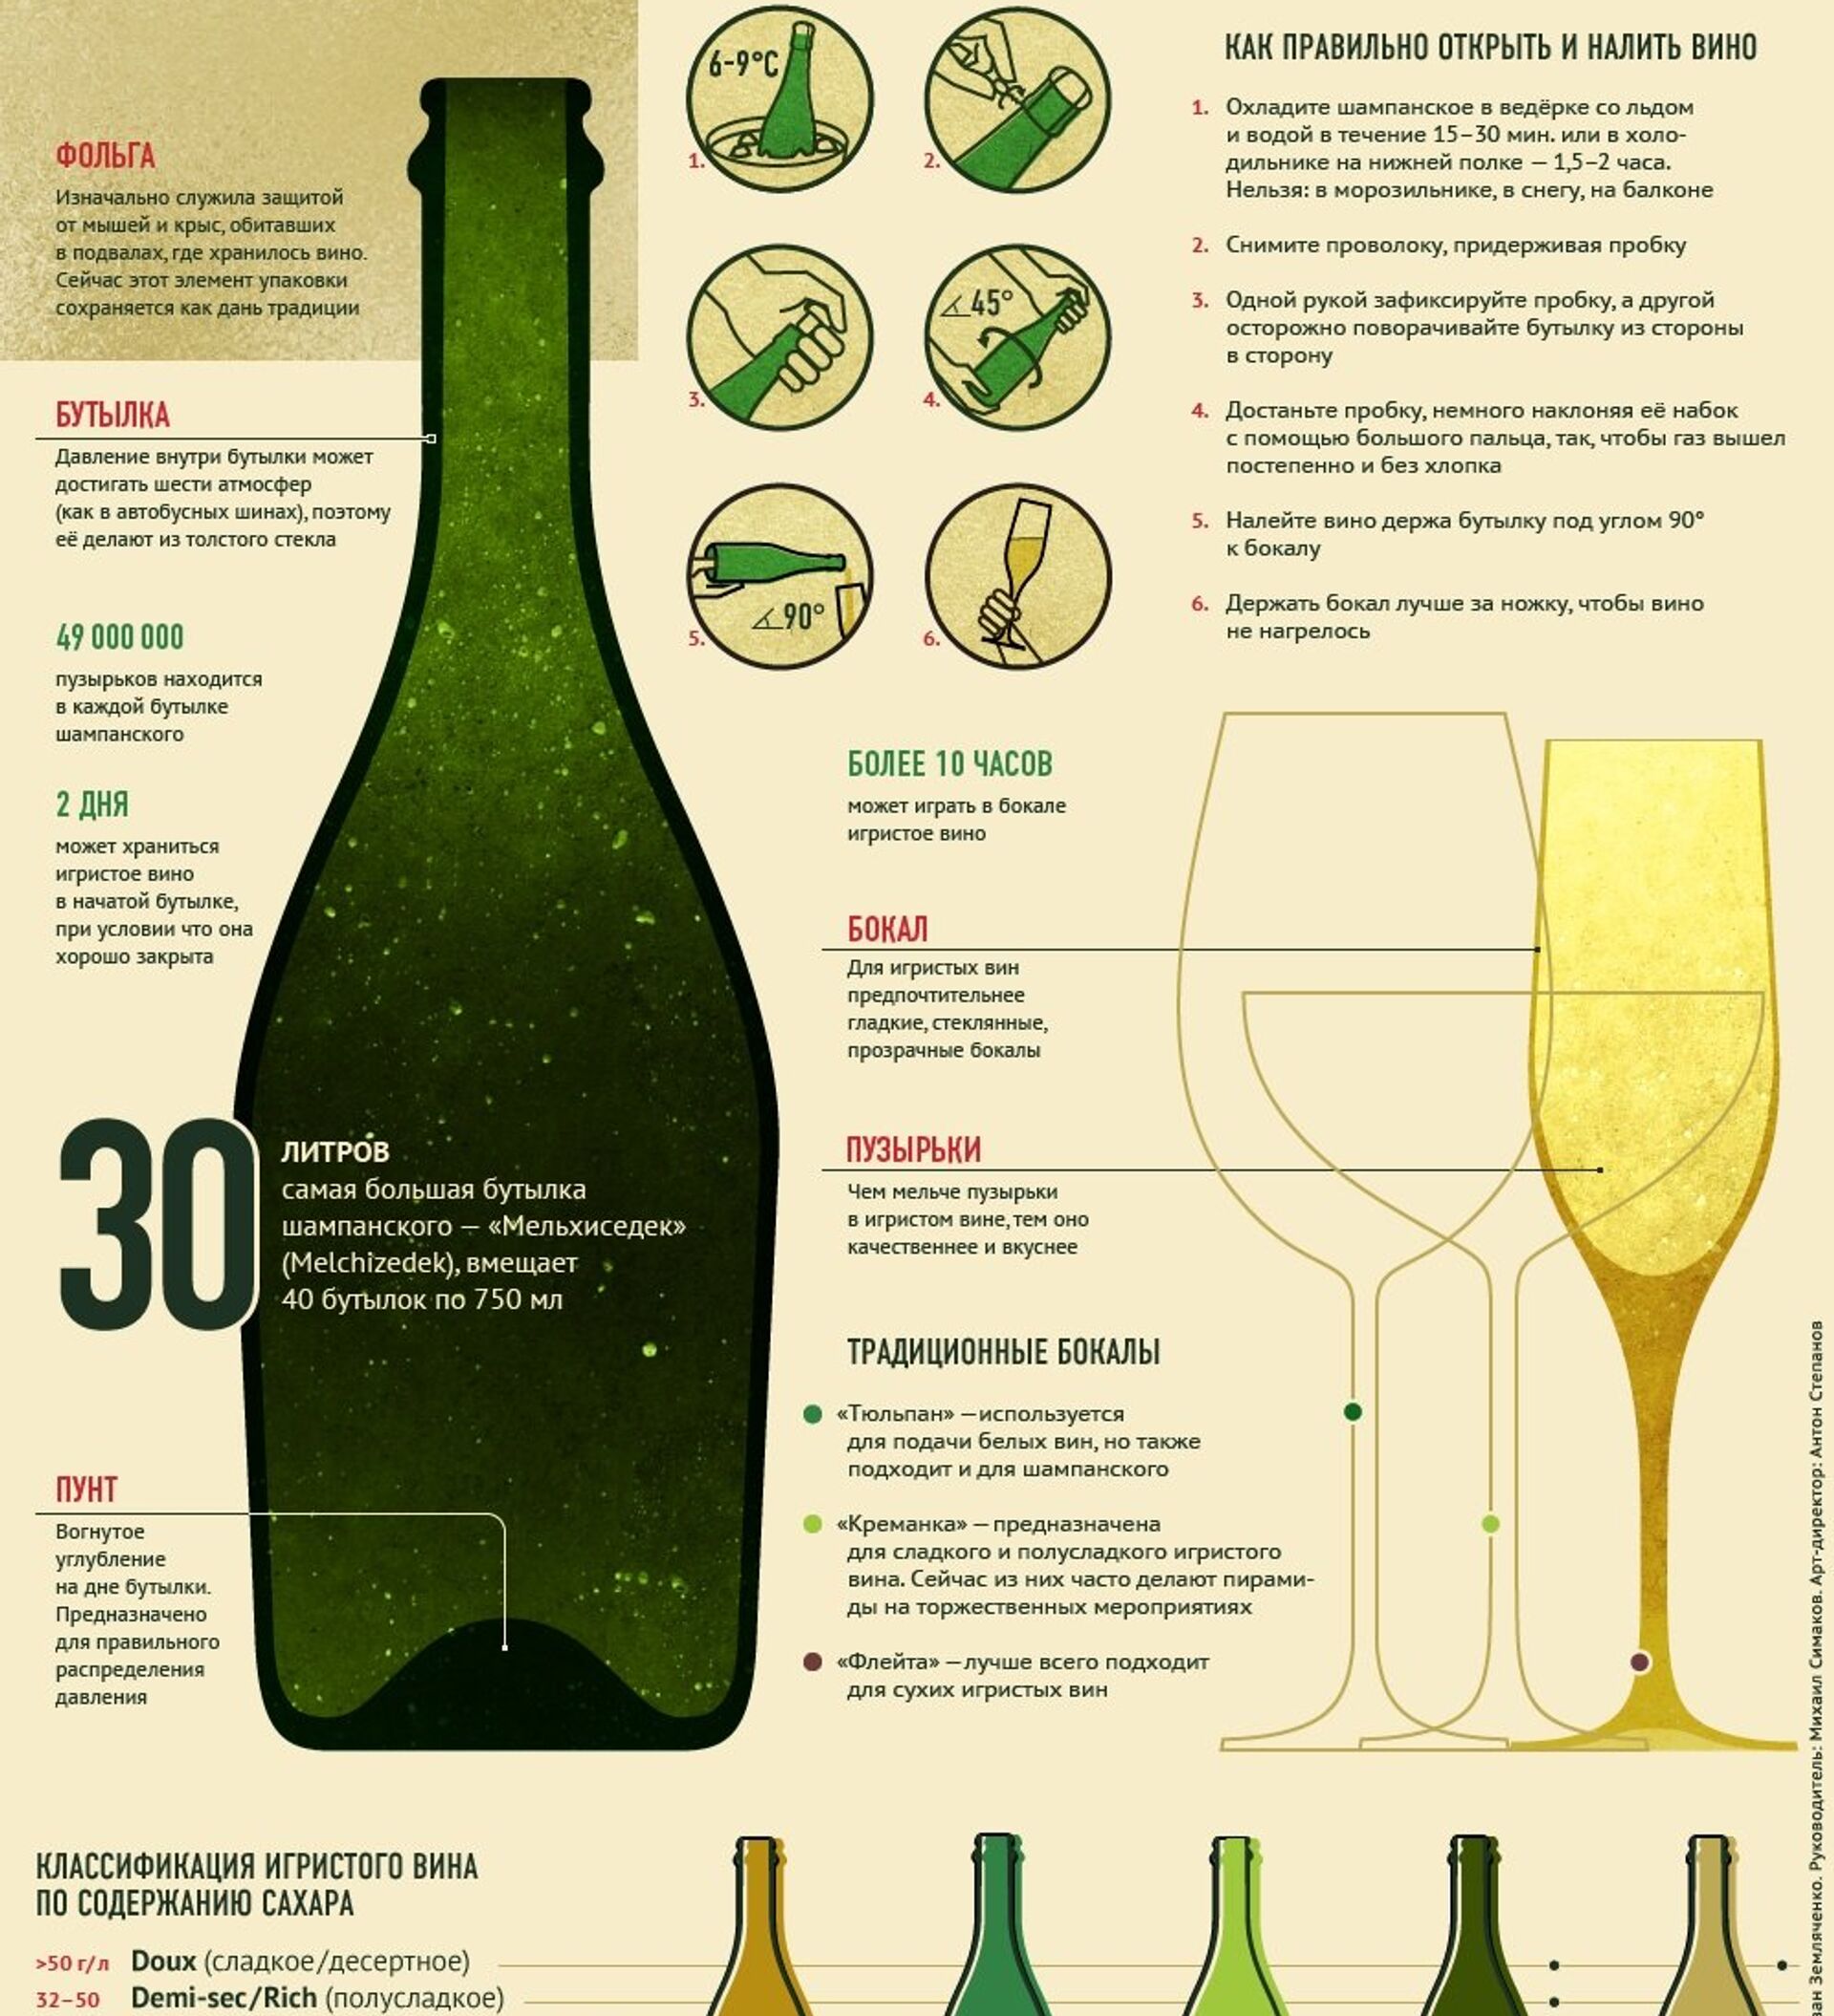 Дно шампанского. Шампанское инфографика. Сорта белого вина сухого. Название игристых вин. Названия частей бутылки шампанского.